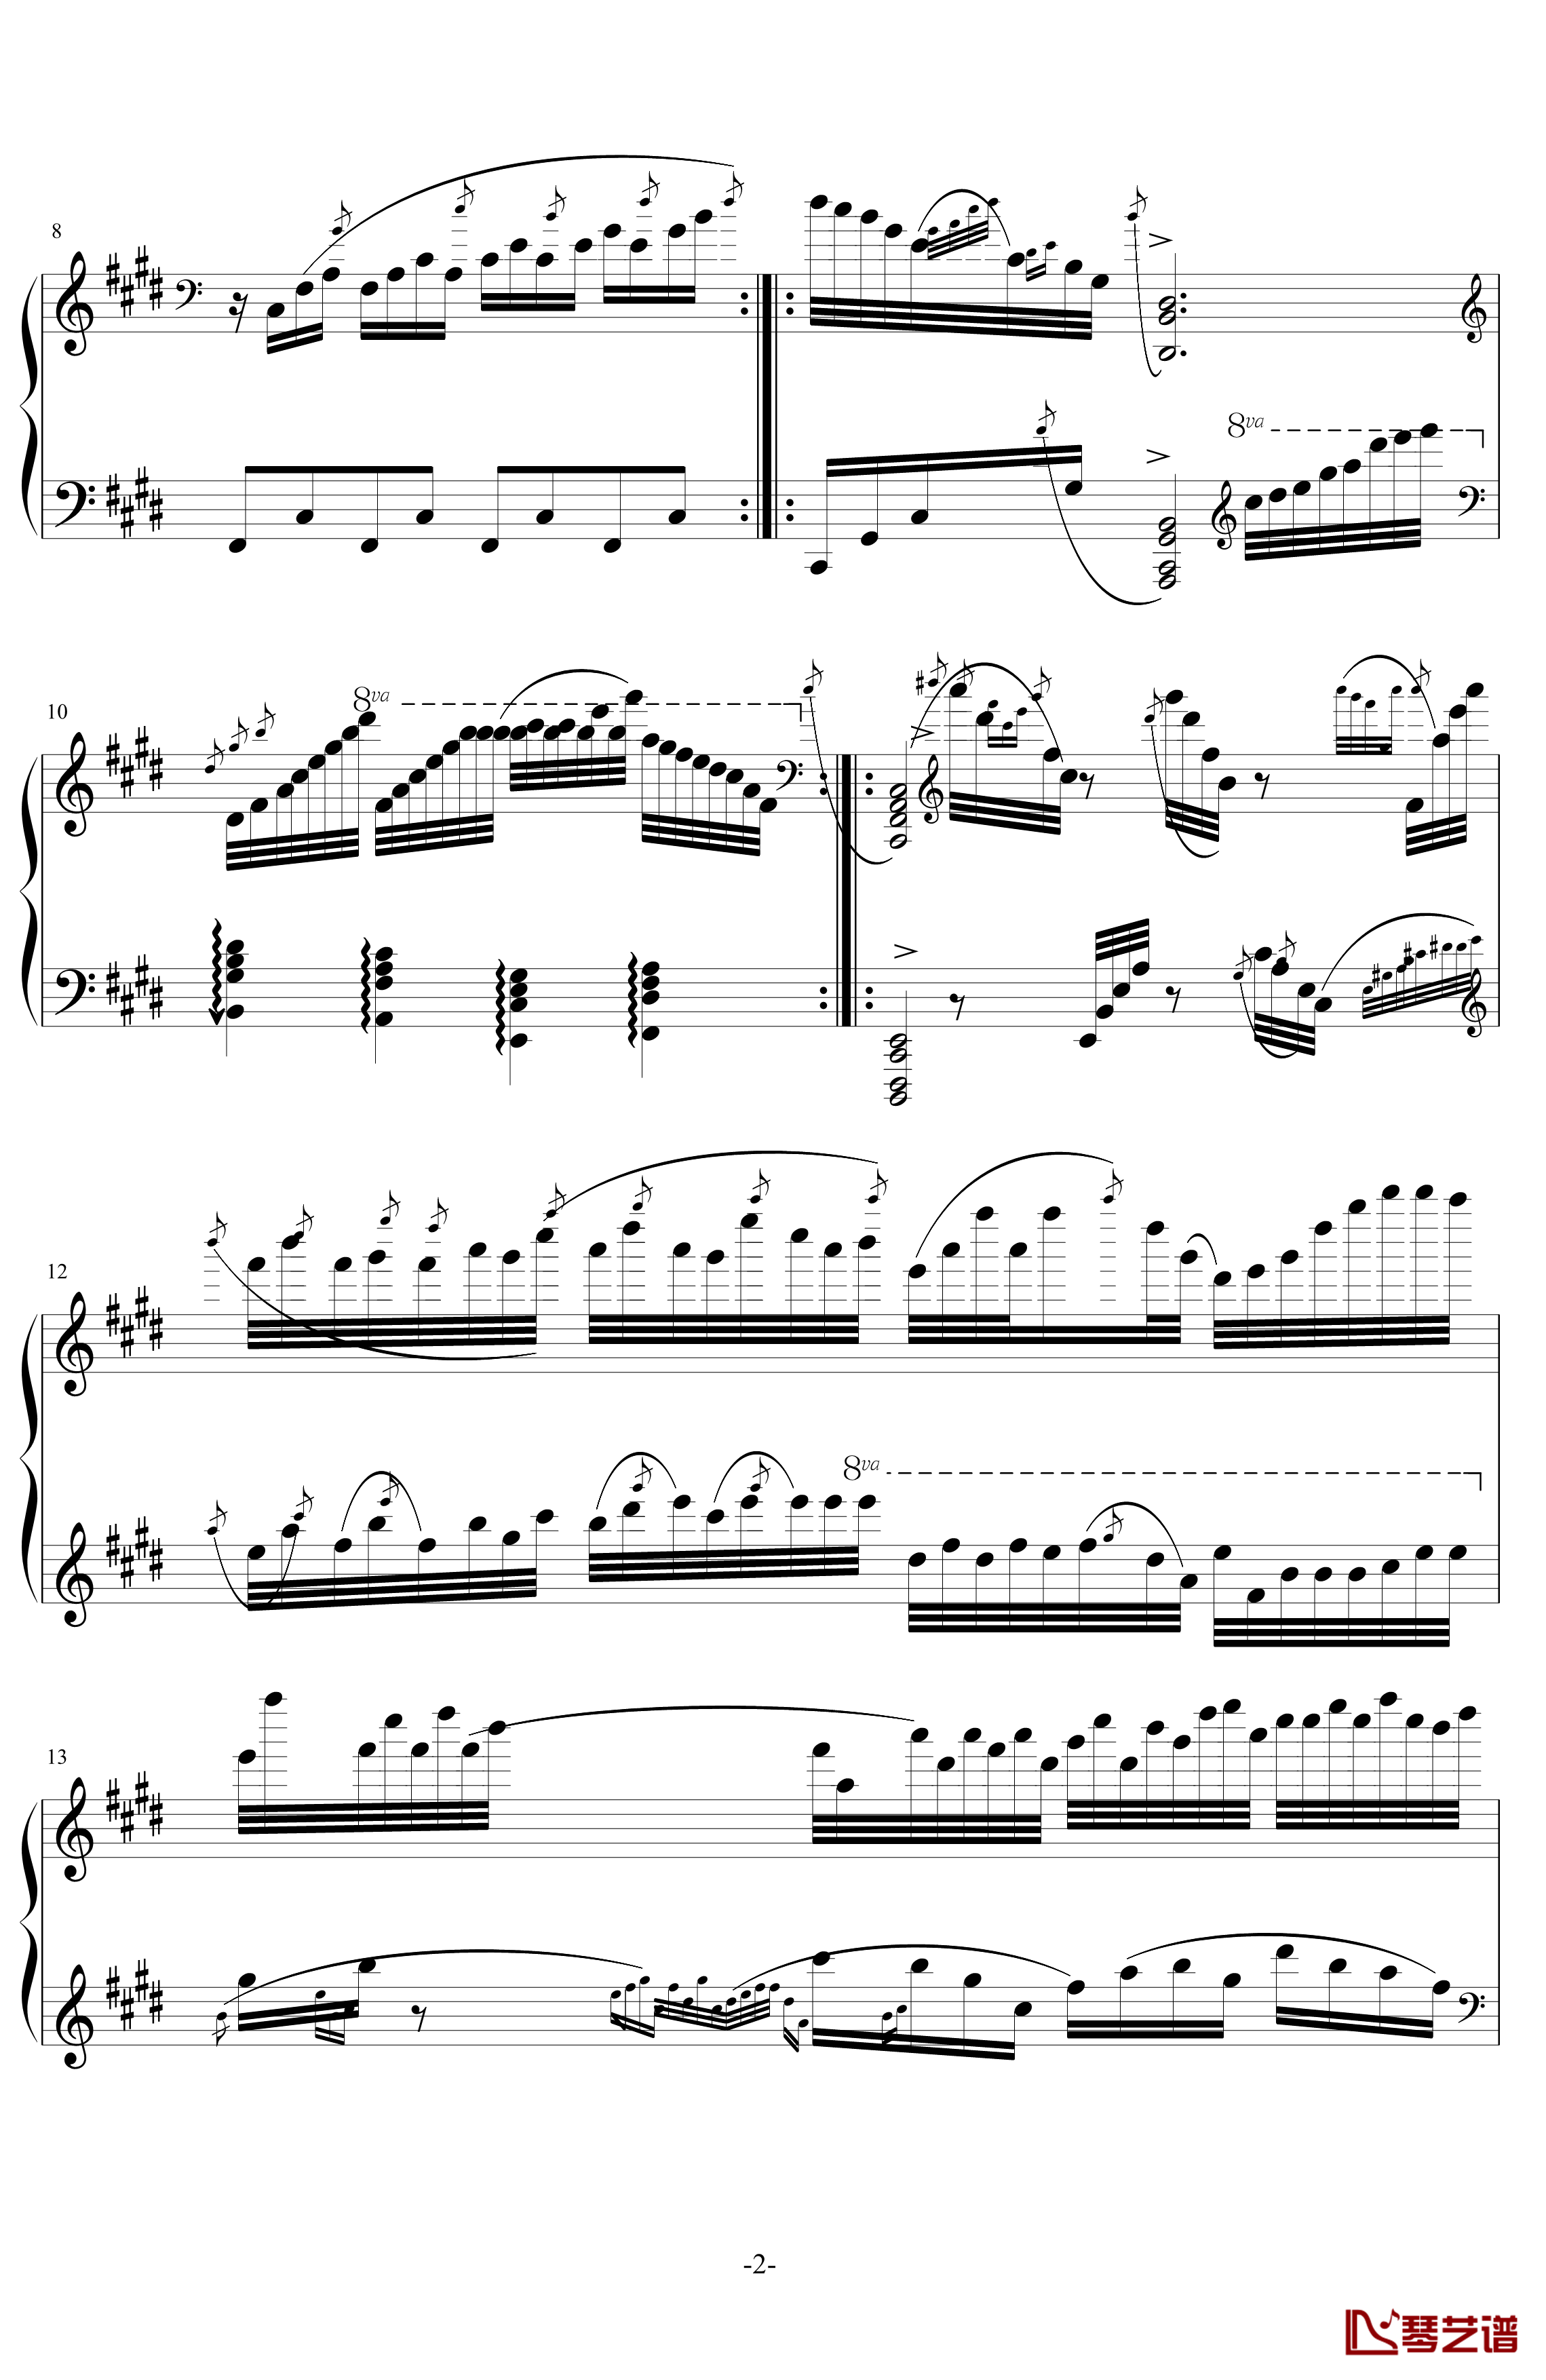 倚音“起义”钢琴谱-第N号练习曲-记memory忆2